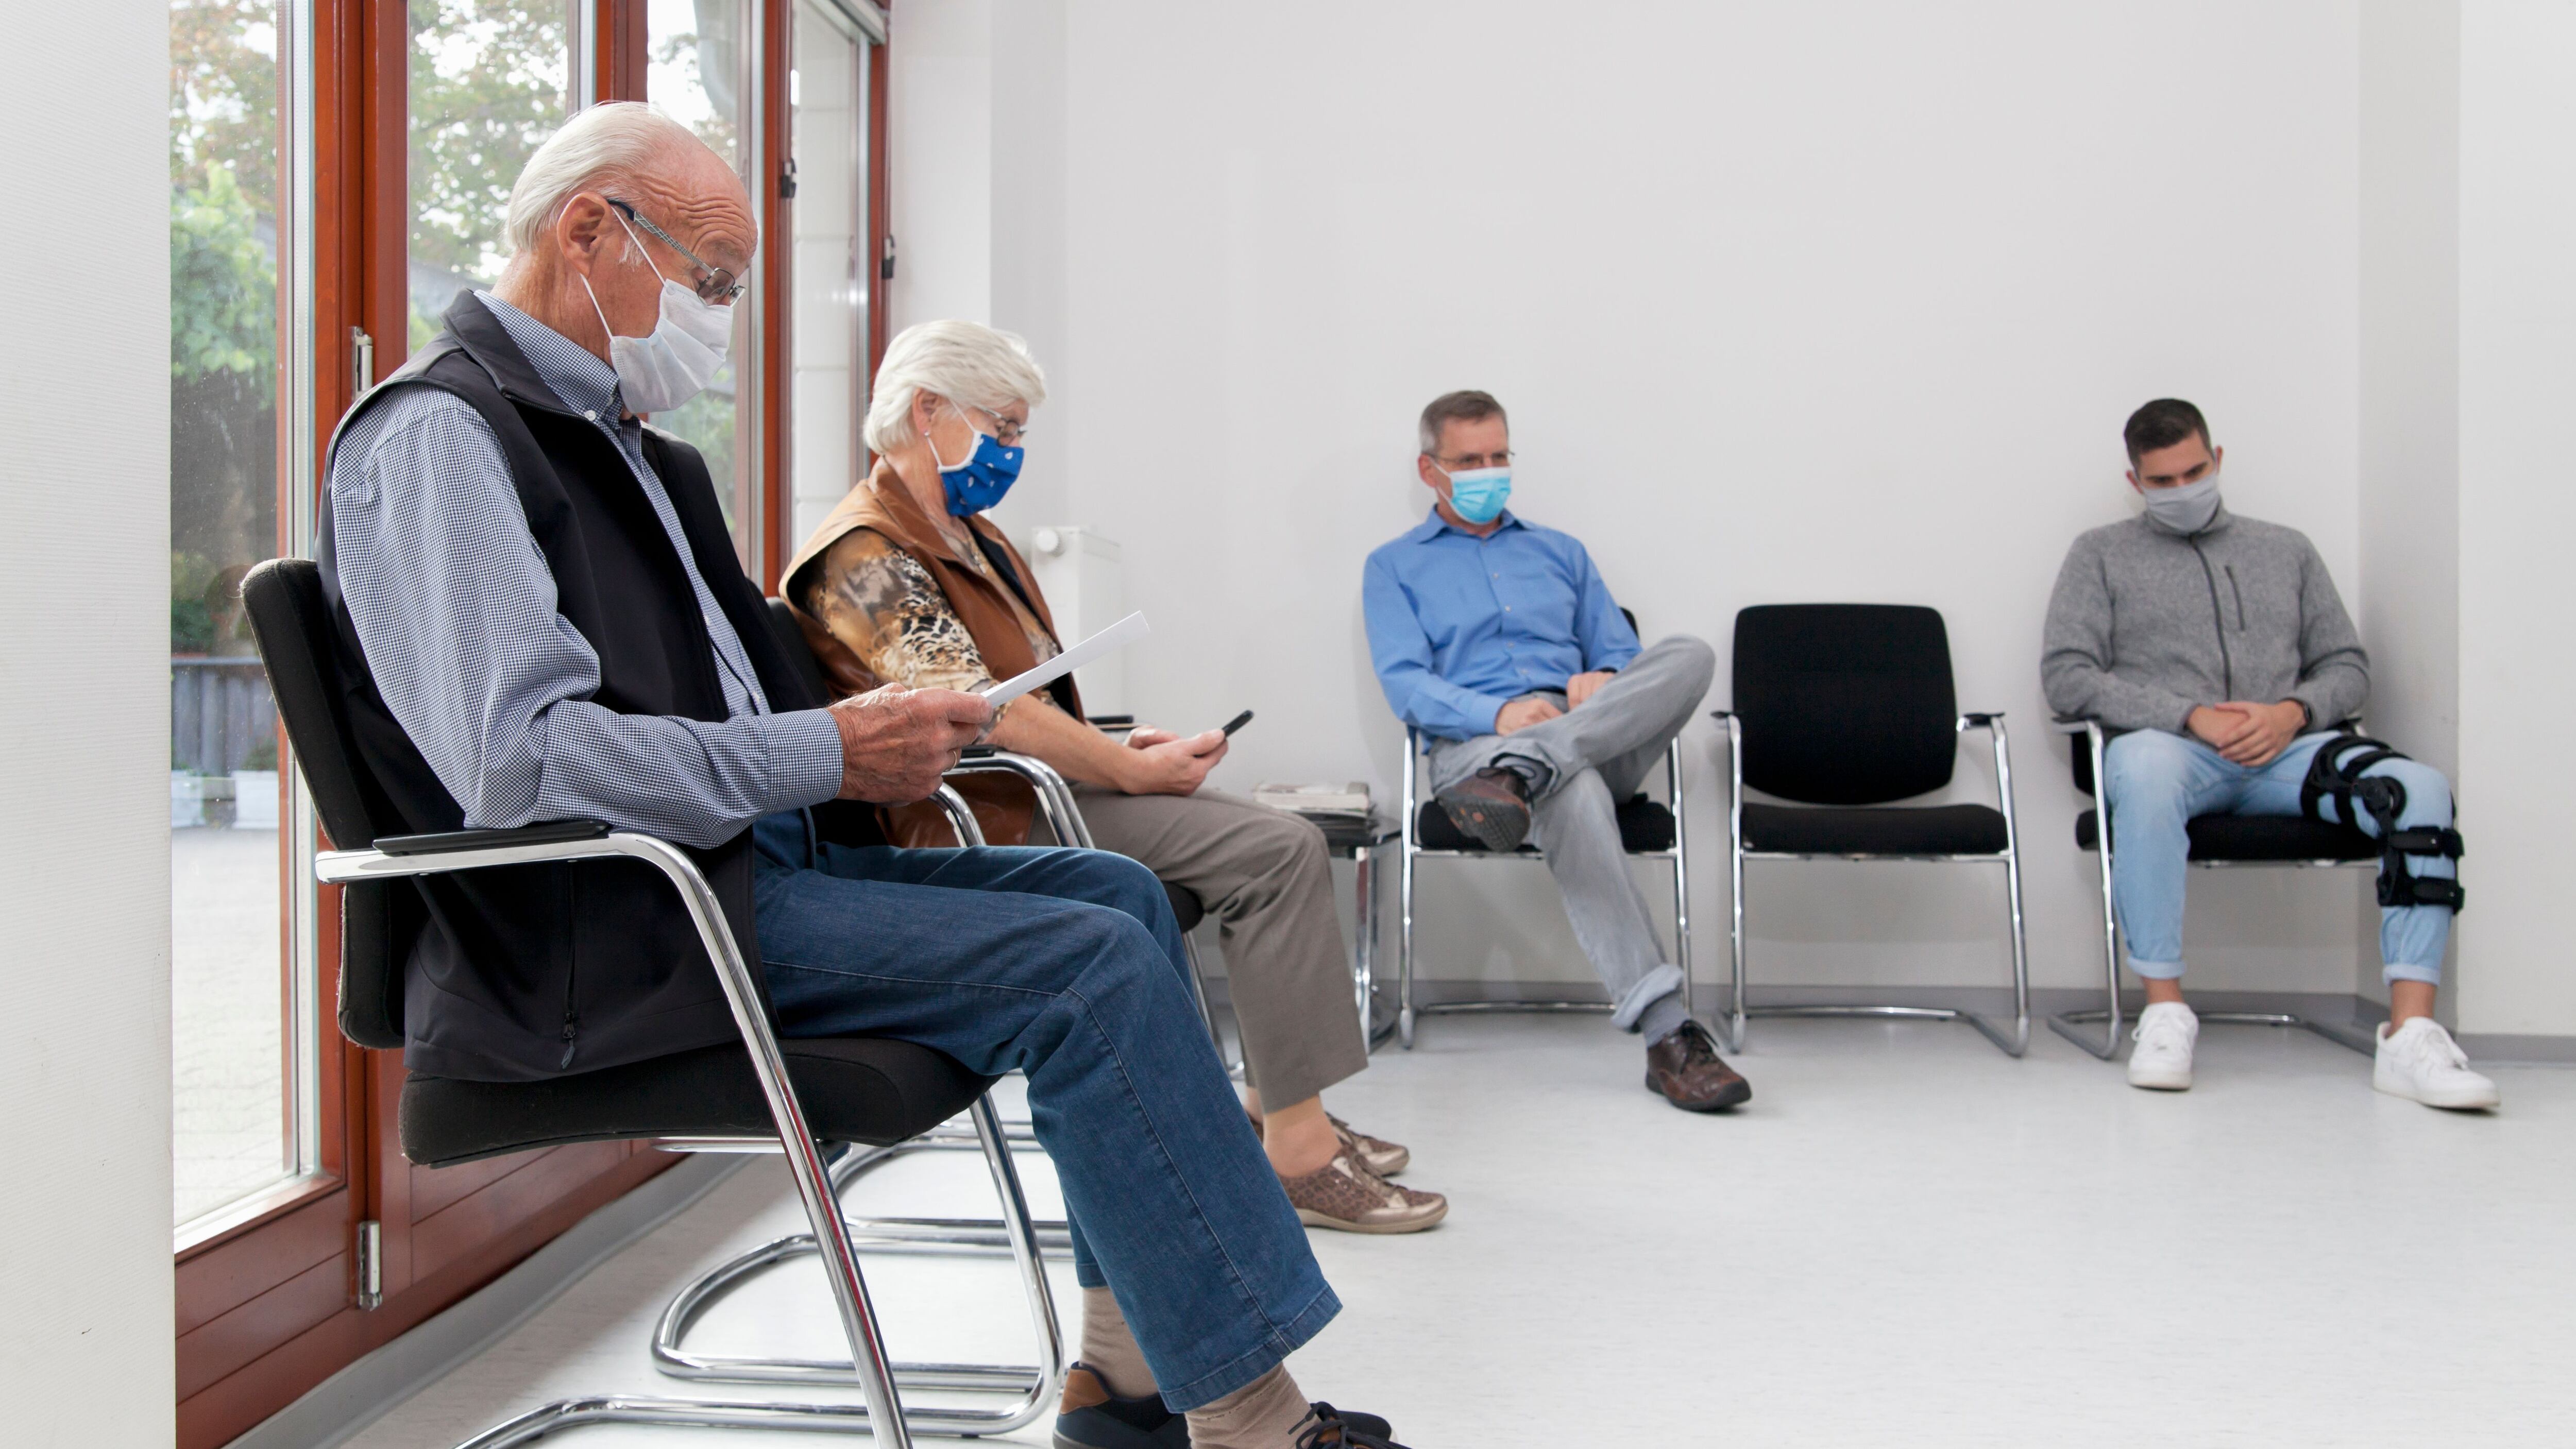 Pacientes en la sala de espera de un hospital (Shutterstock)